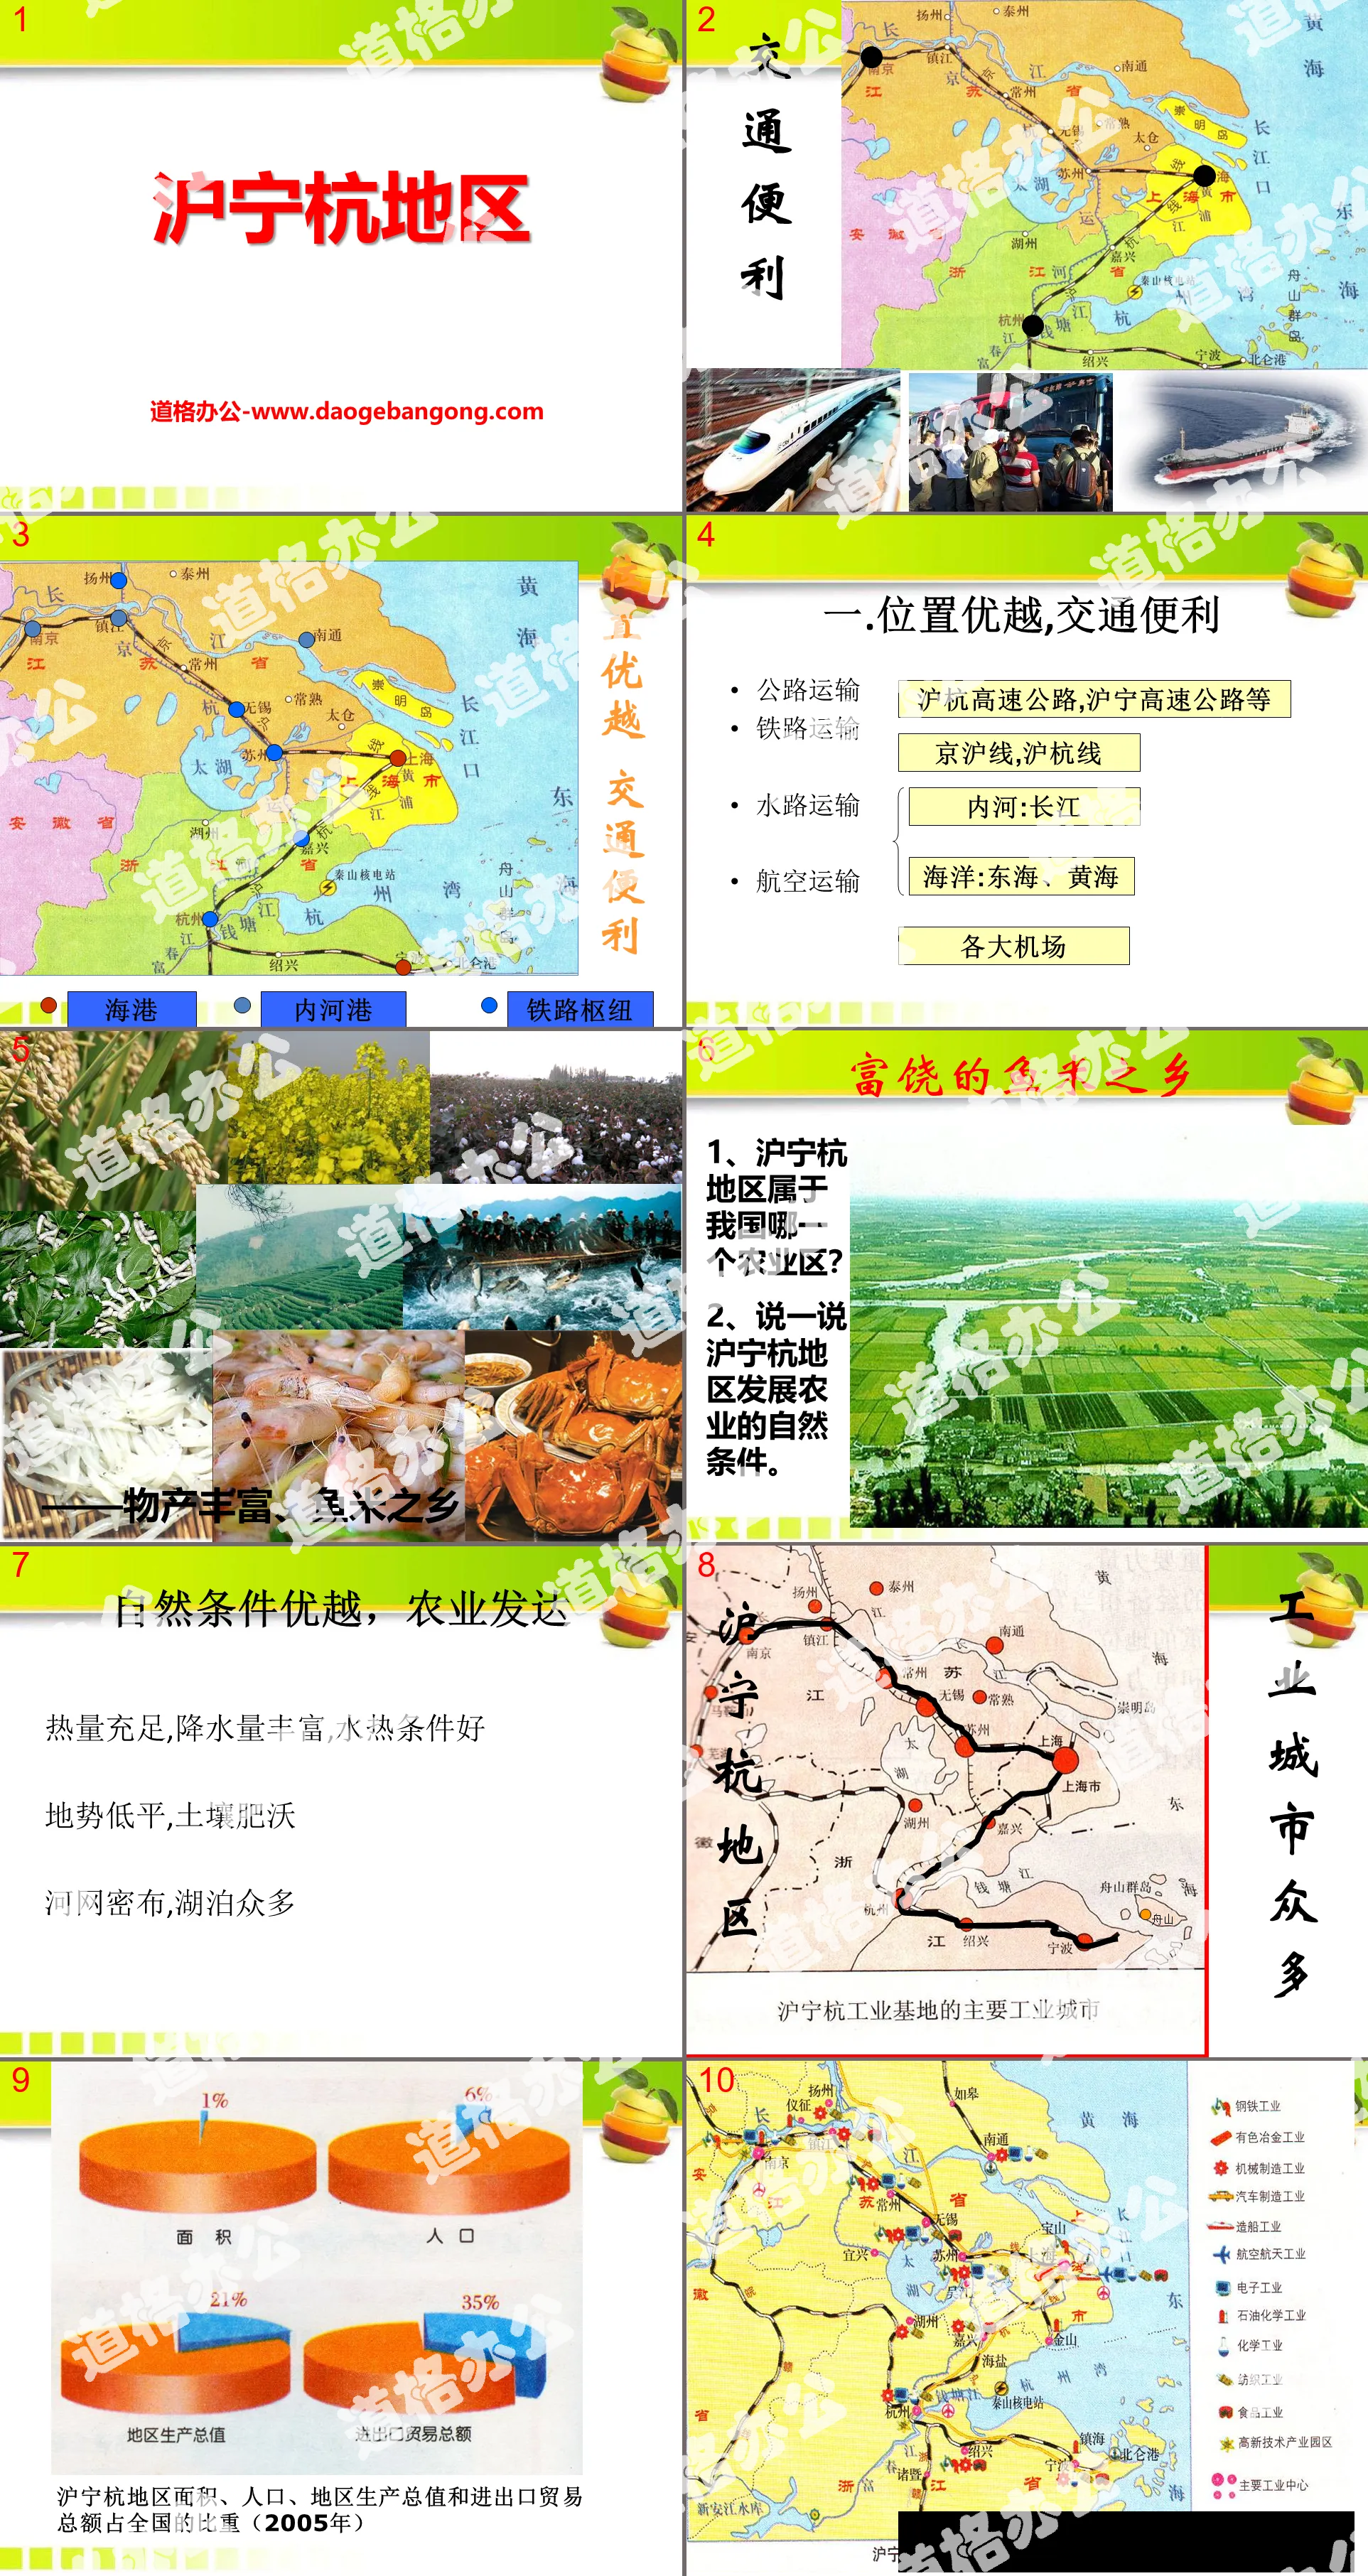 "Shanghai-Nanjing-Hangzhou Region" PPT courseware